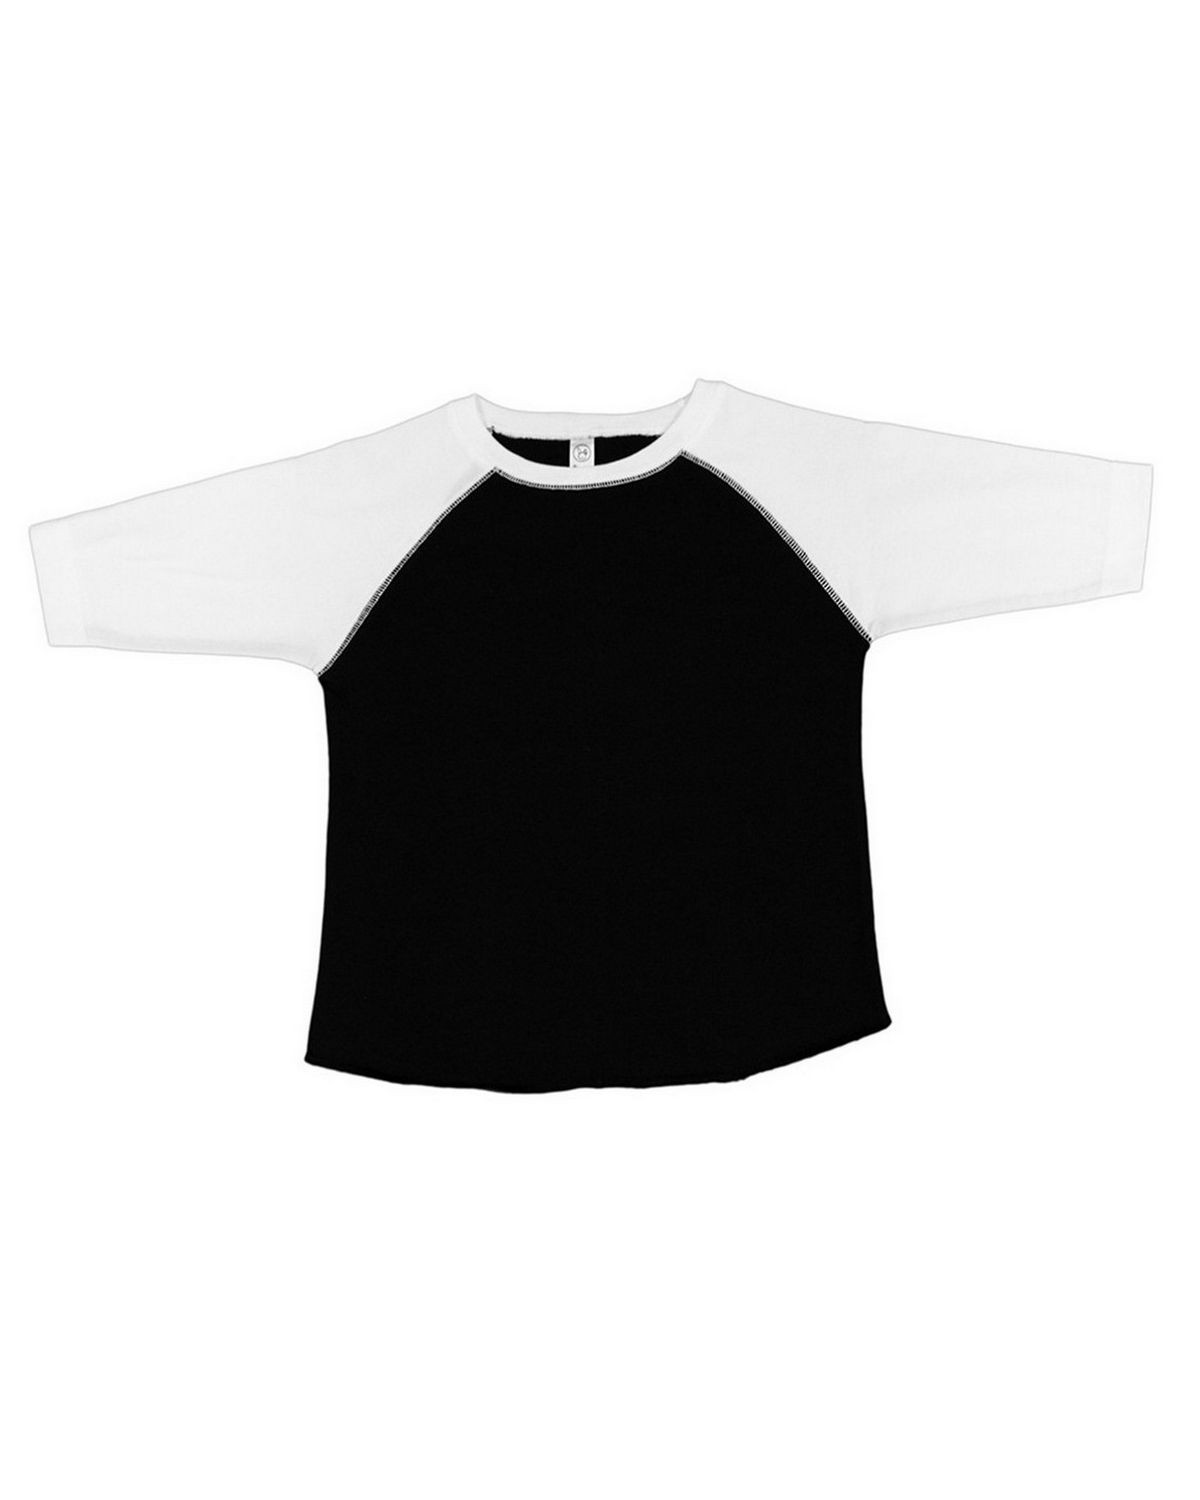 Rabbit Skins RS3330 Toddler Vintage Fine Jersey Baseball T-Shirt - Black/ White - 4T #vintage